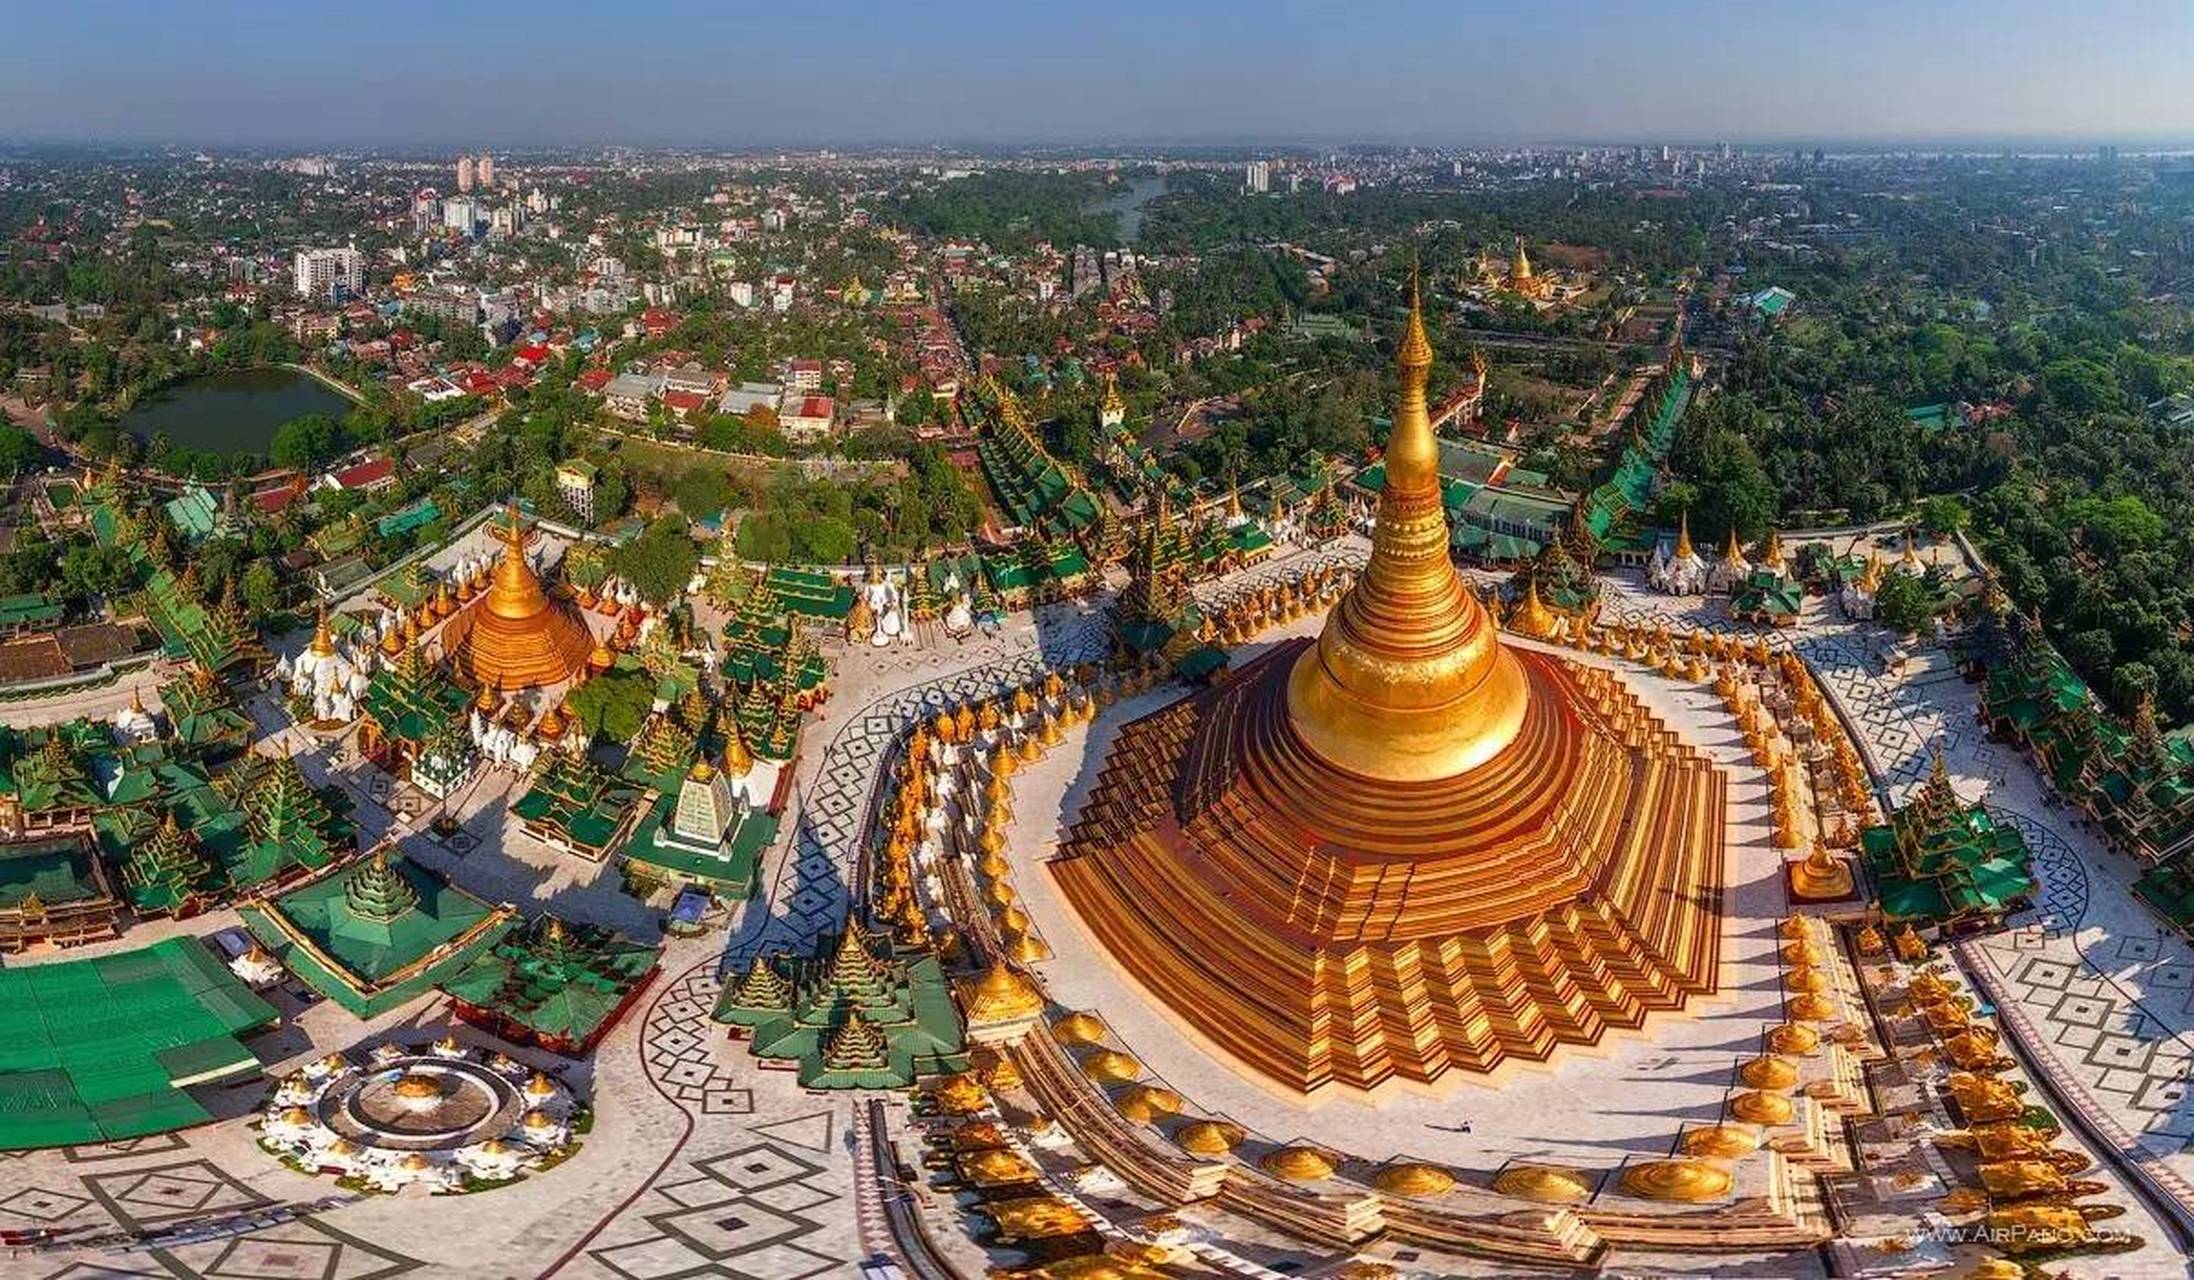 能否到缅甸,柬埔寨旅游的关键其实在于国内的旅行社是否值得信赖  据